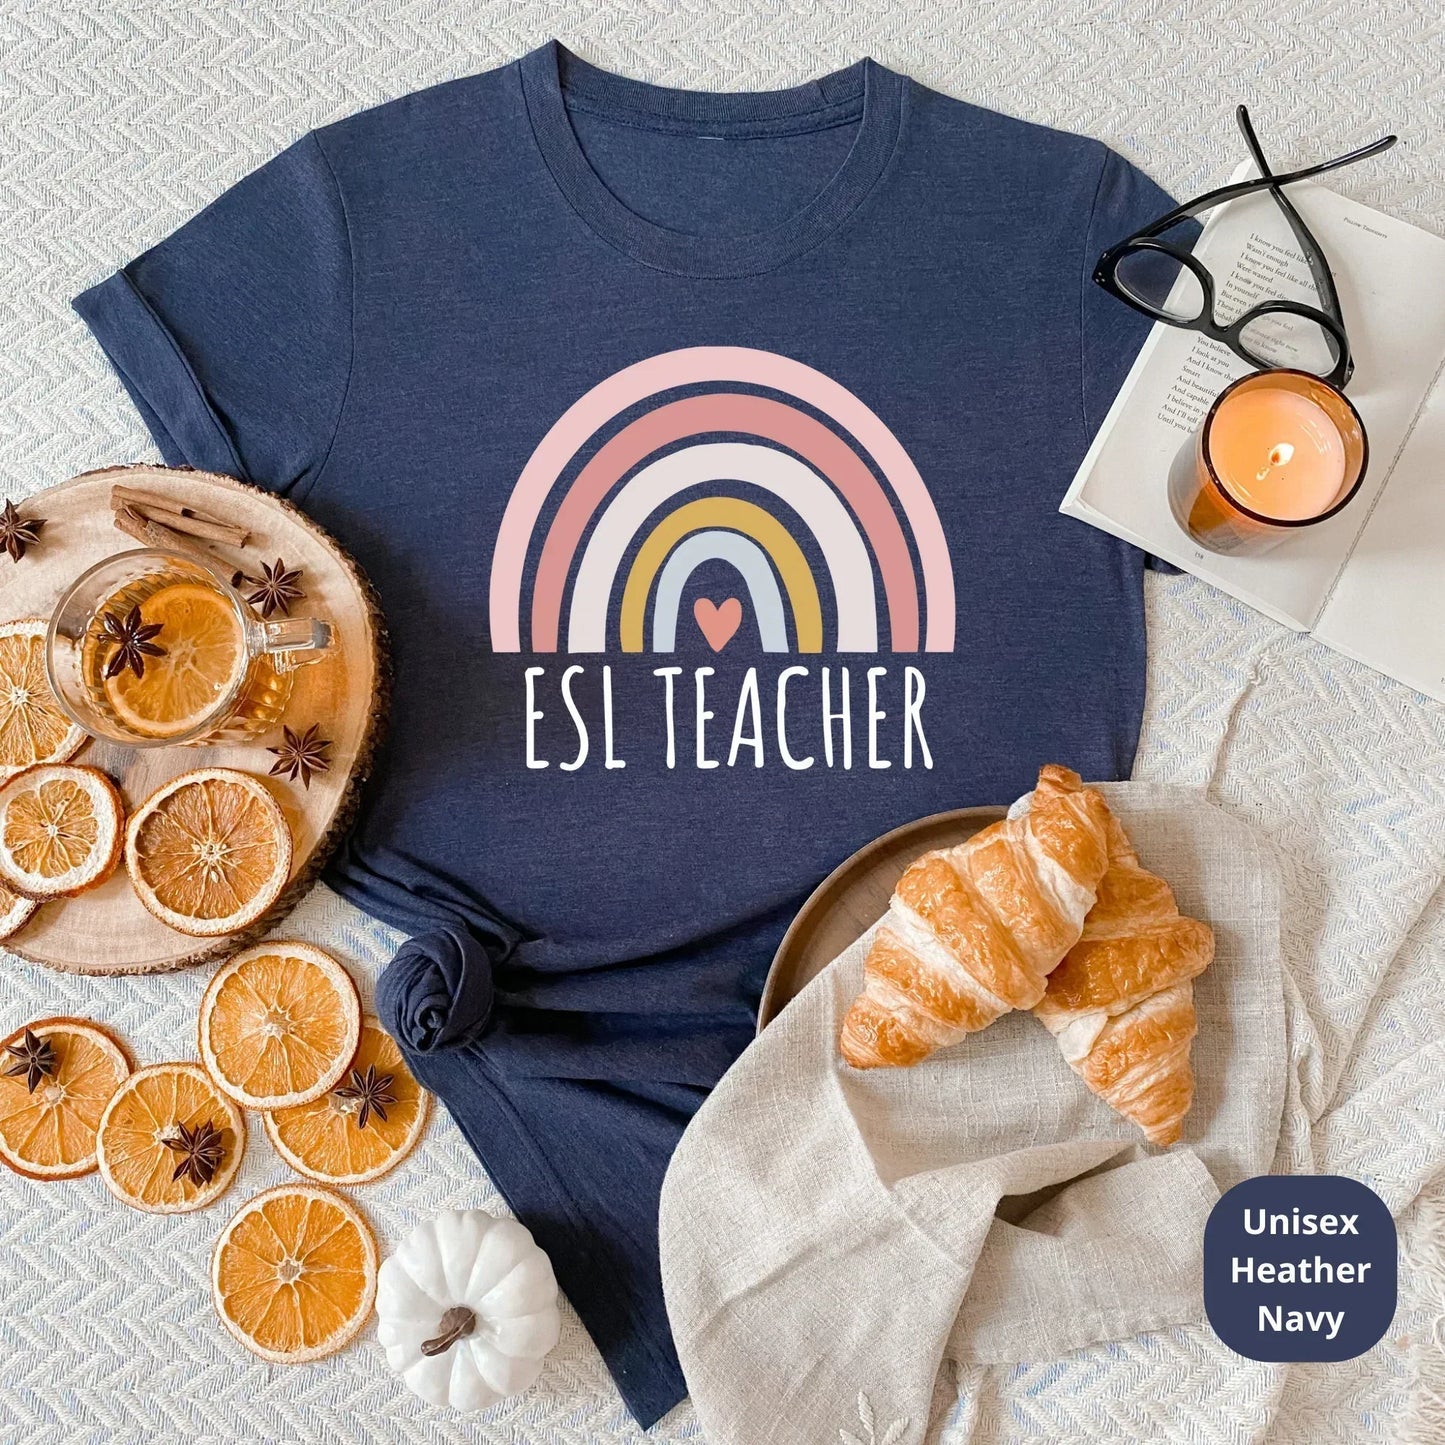 ESL Teacher Shirt, Gift for Teacher, English Language Teacher Shirt, Teacher Appreciation Gift, ESL Teacher Gift,Multilingual Teacher Shirt HMDesignStudioUS